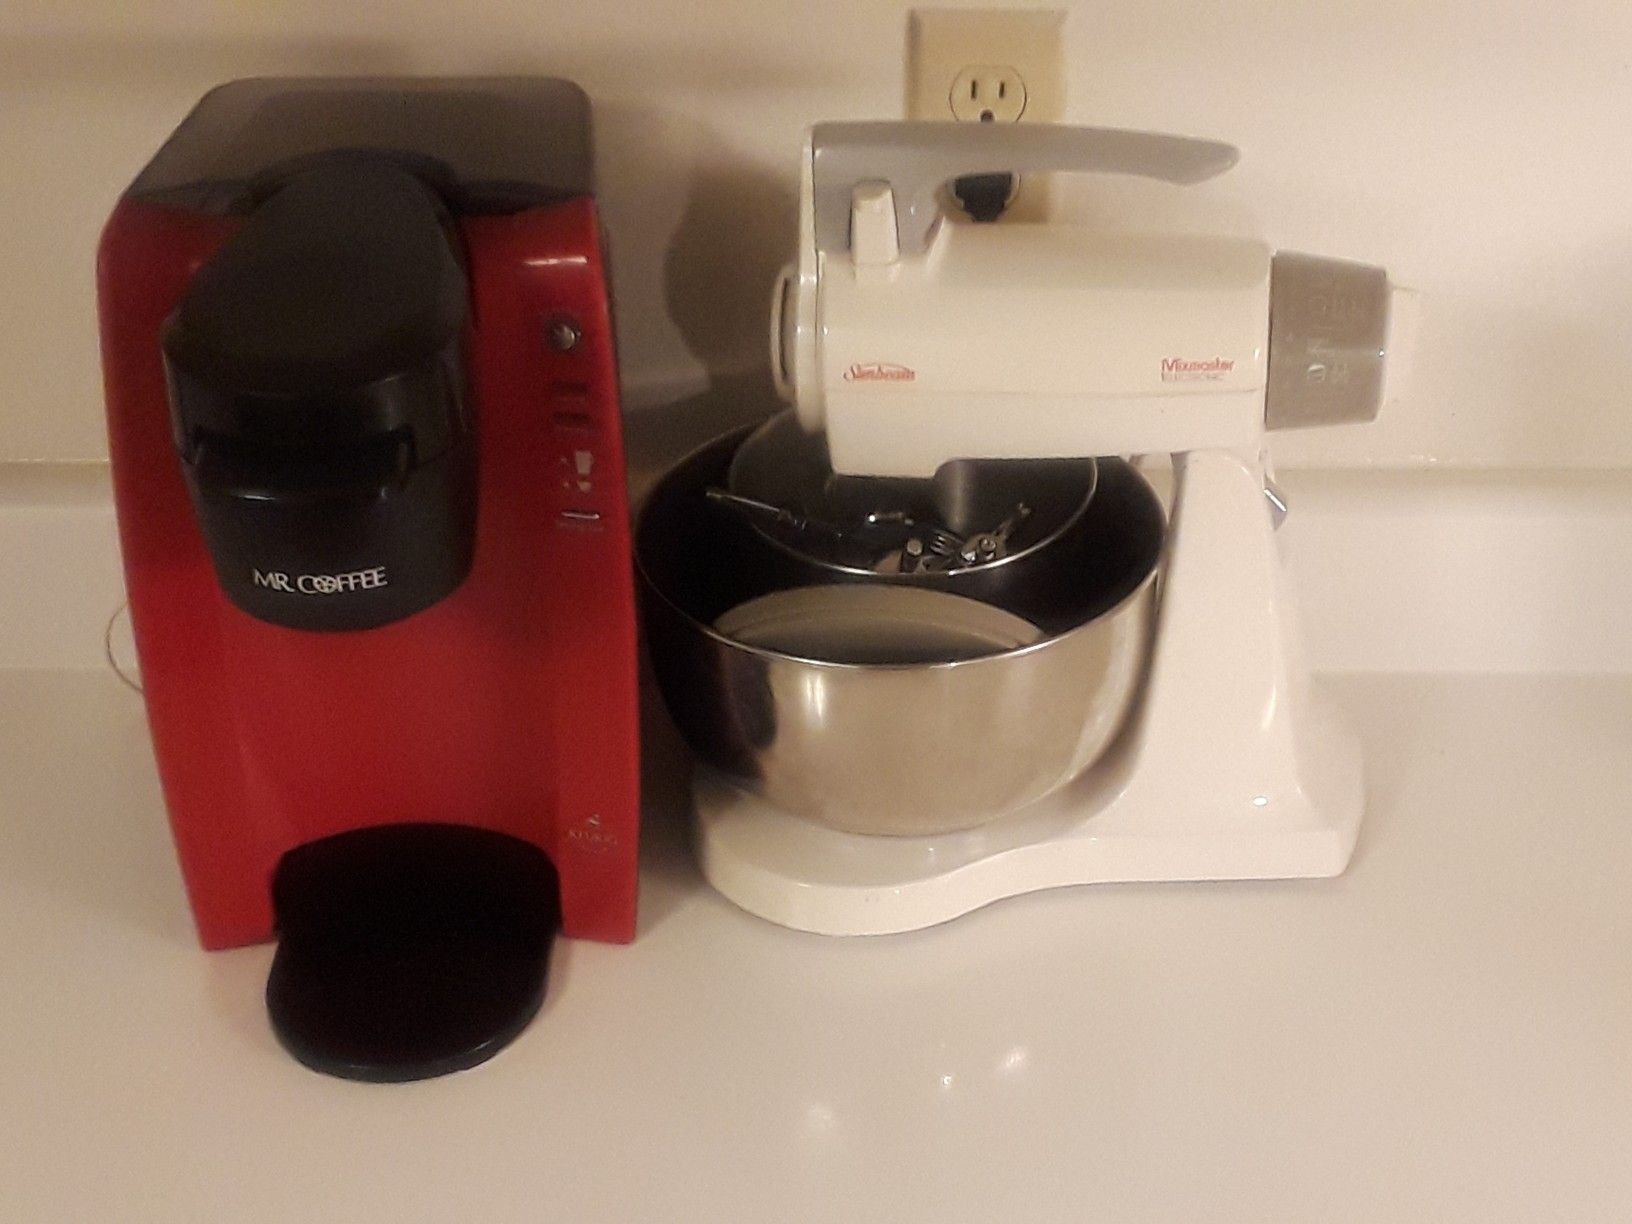 Espresso machine and Blender